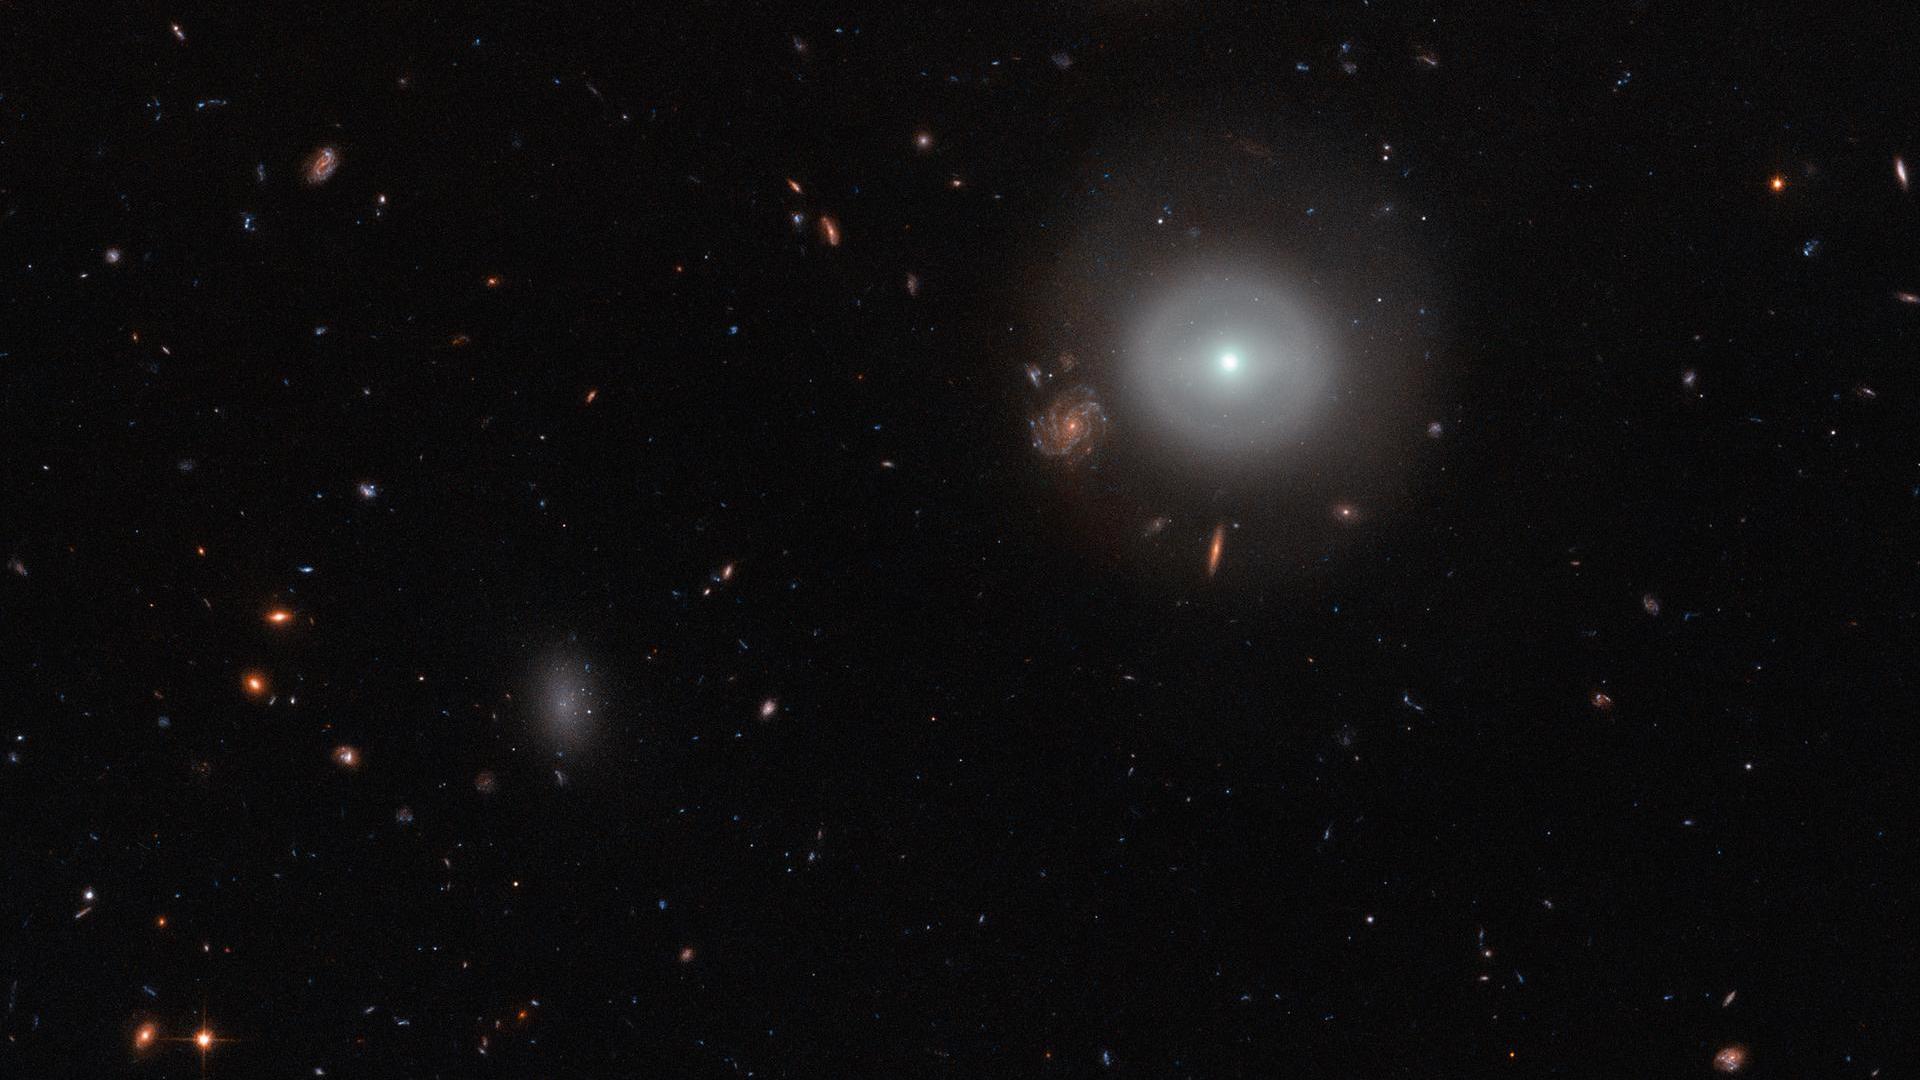 Capturada pela Advanced Camera for Surveys (ACS) do Telescópio Espacial Hubble da NASA/ESA, esta cena mostra PGC 83677, uma galáxia lenticular — um tipo de galáxia que fica entre as variedades elípticas e espirais mais familiares.